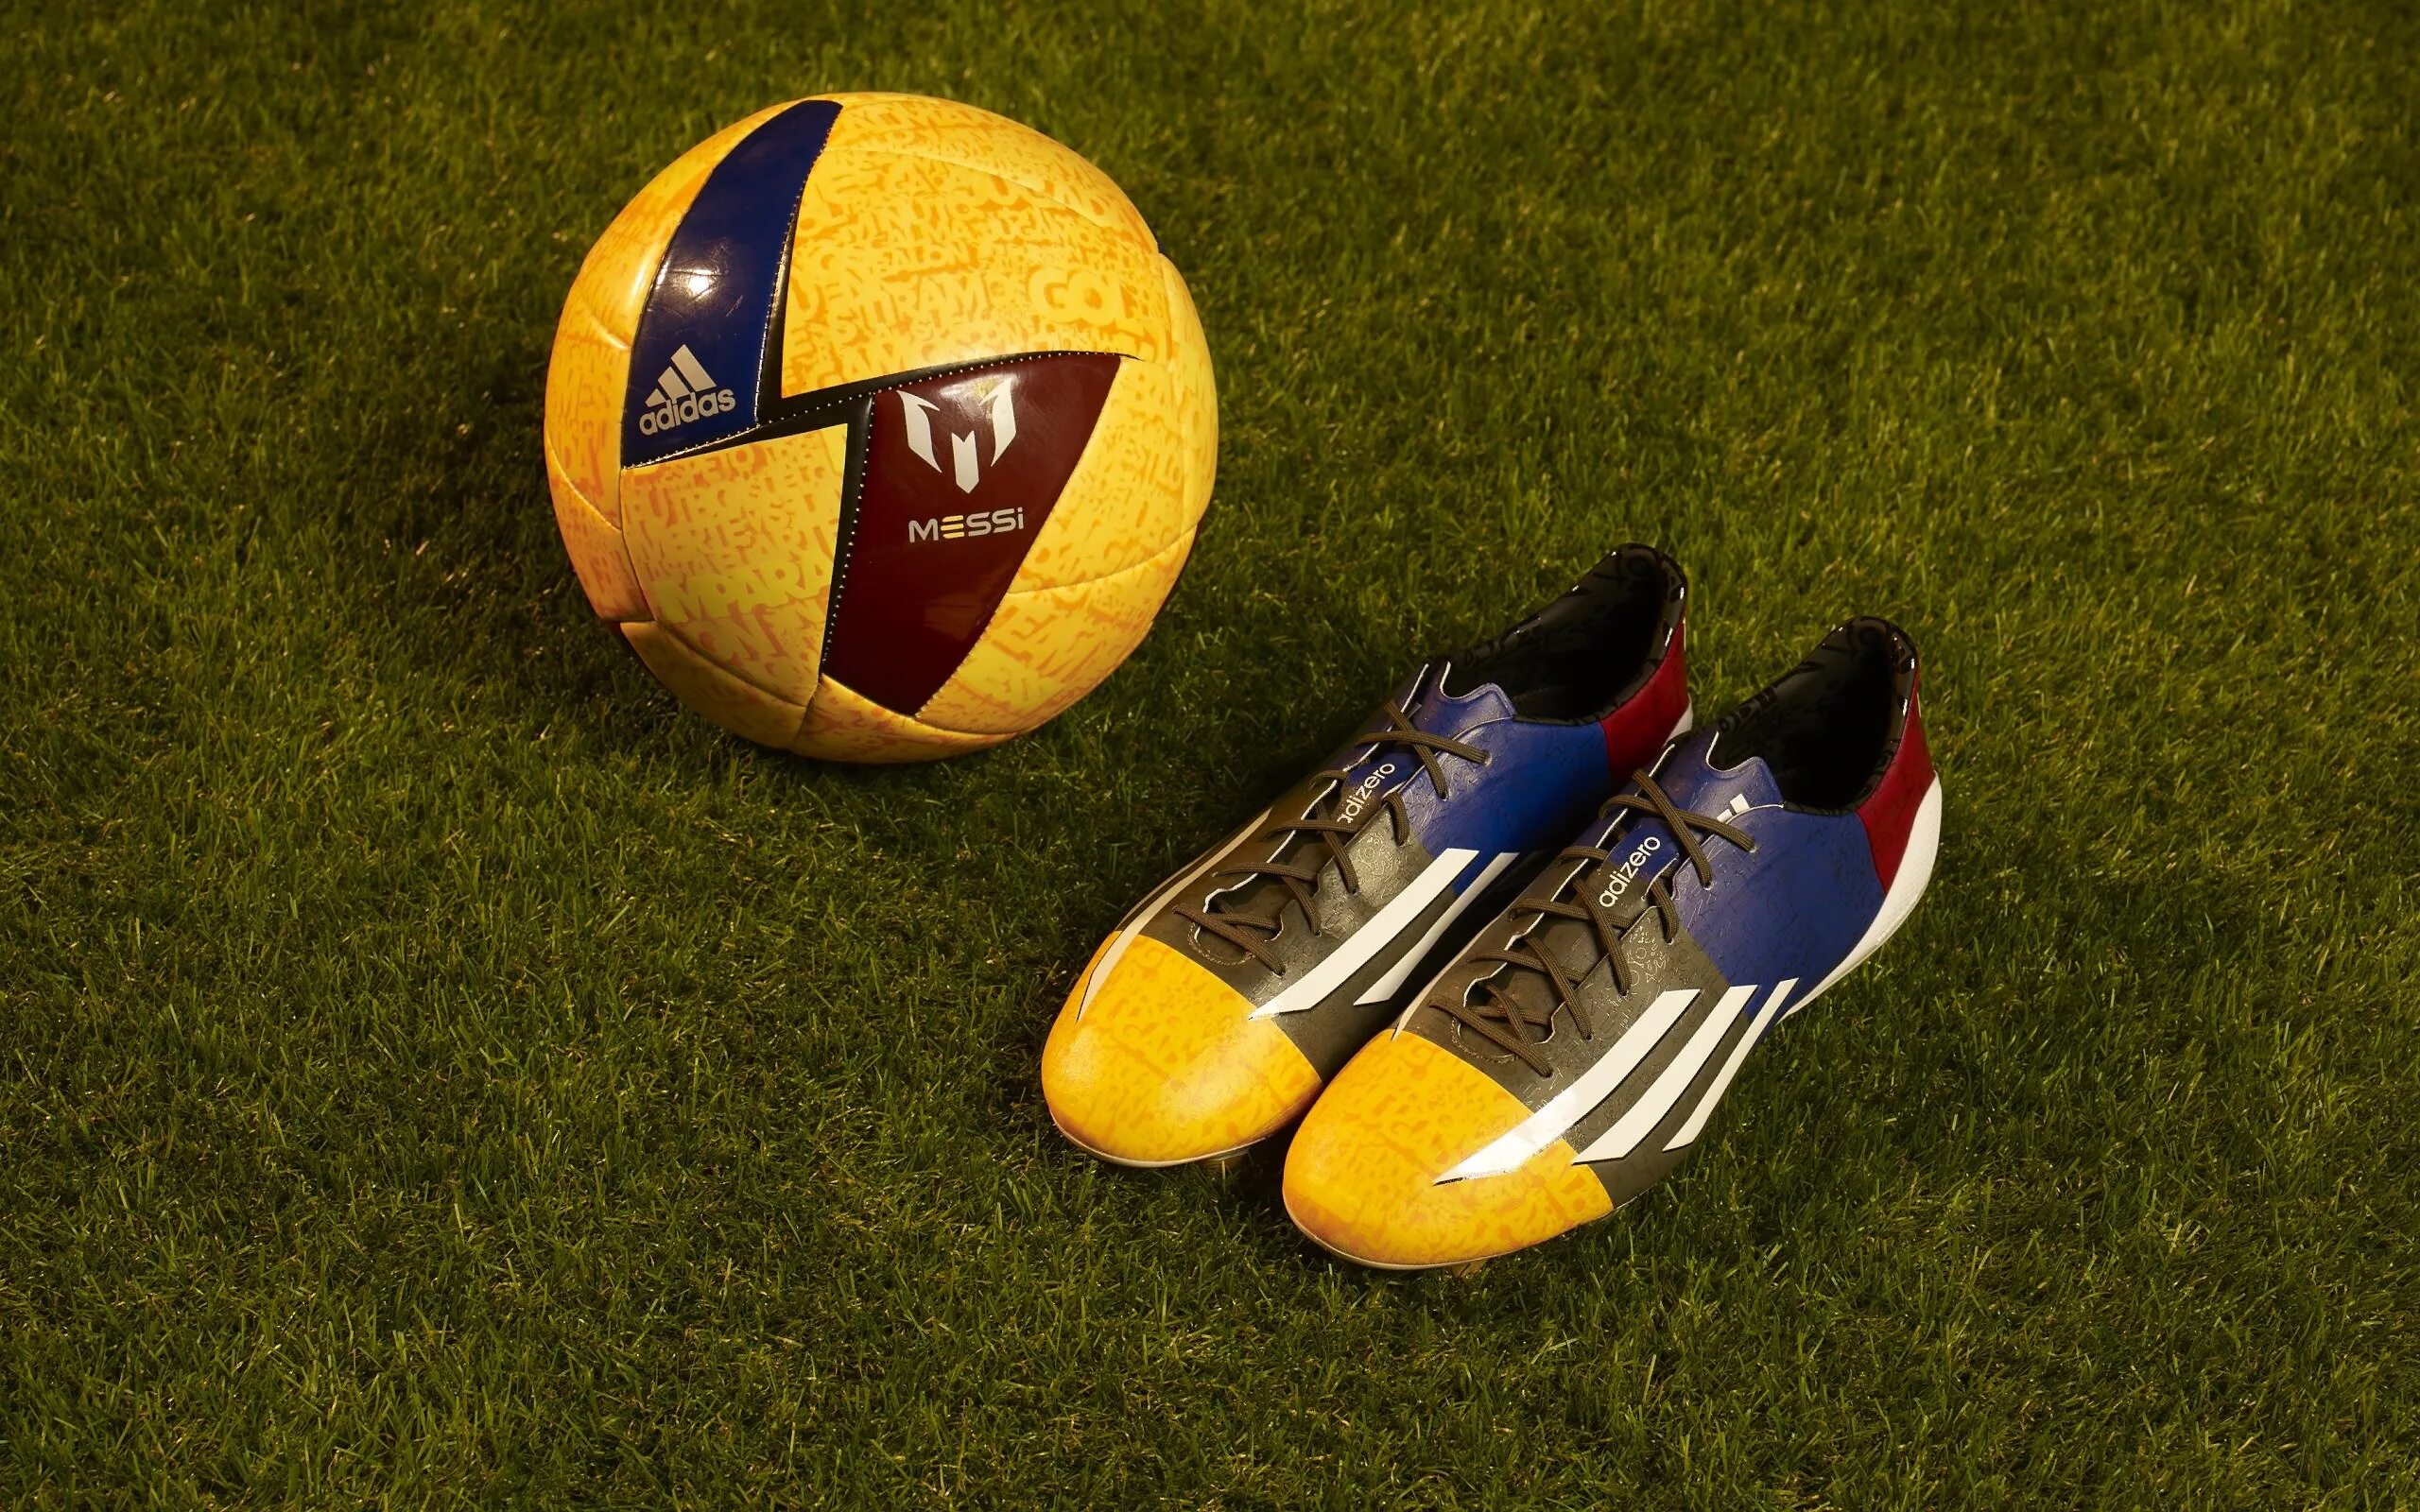 Тренды футбол. Adidas Soccer balls. Бутсы Месси. Футбольные тренды. Messi adidas Boots 2017.